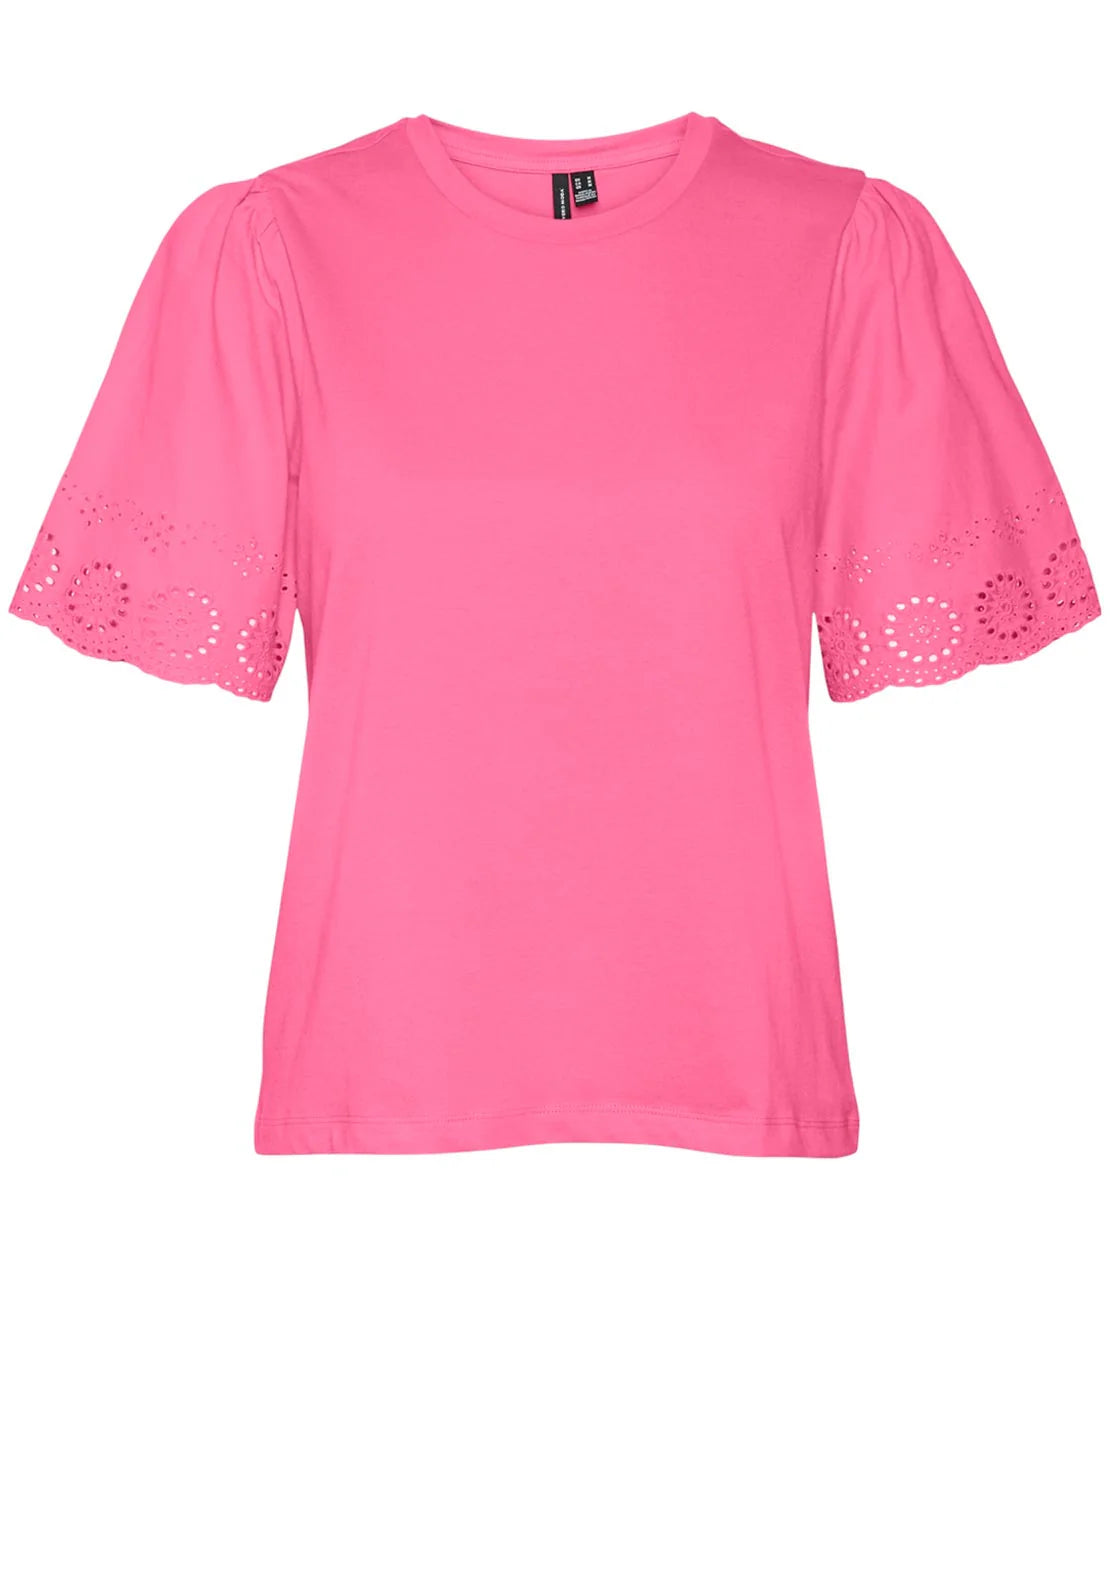 Vero Moda donna t-shirt Emily neck top 10305211 Pink Cosmos